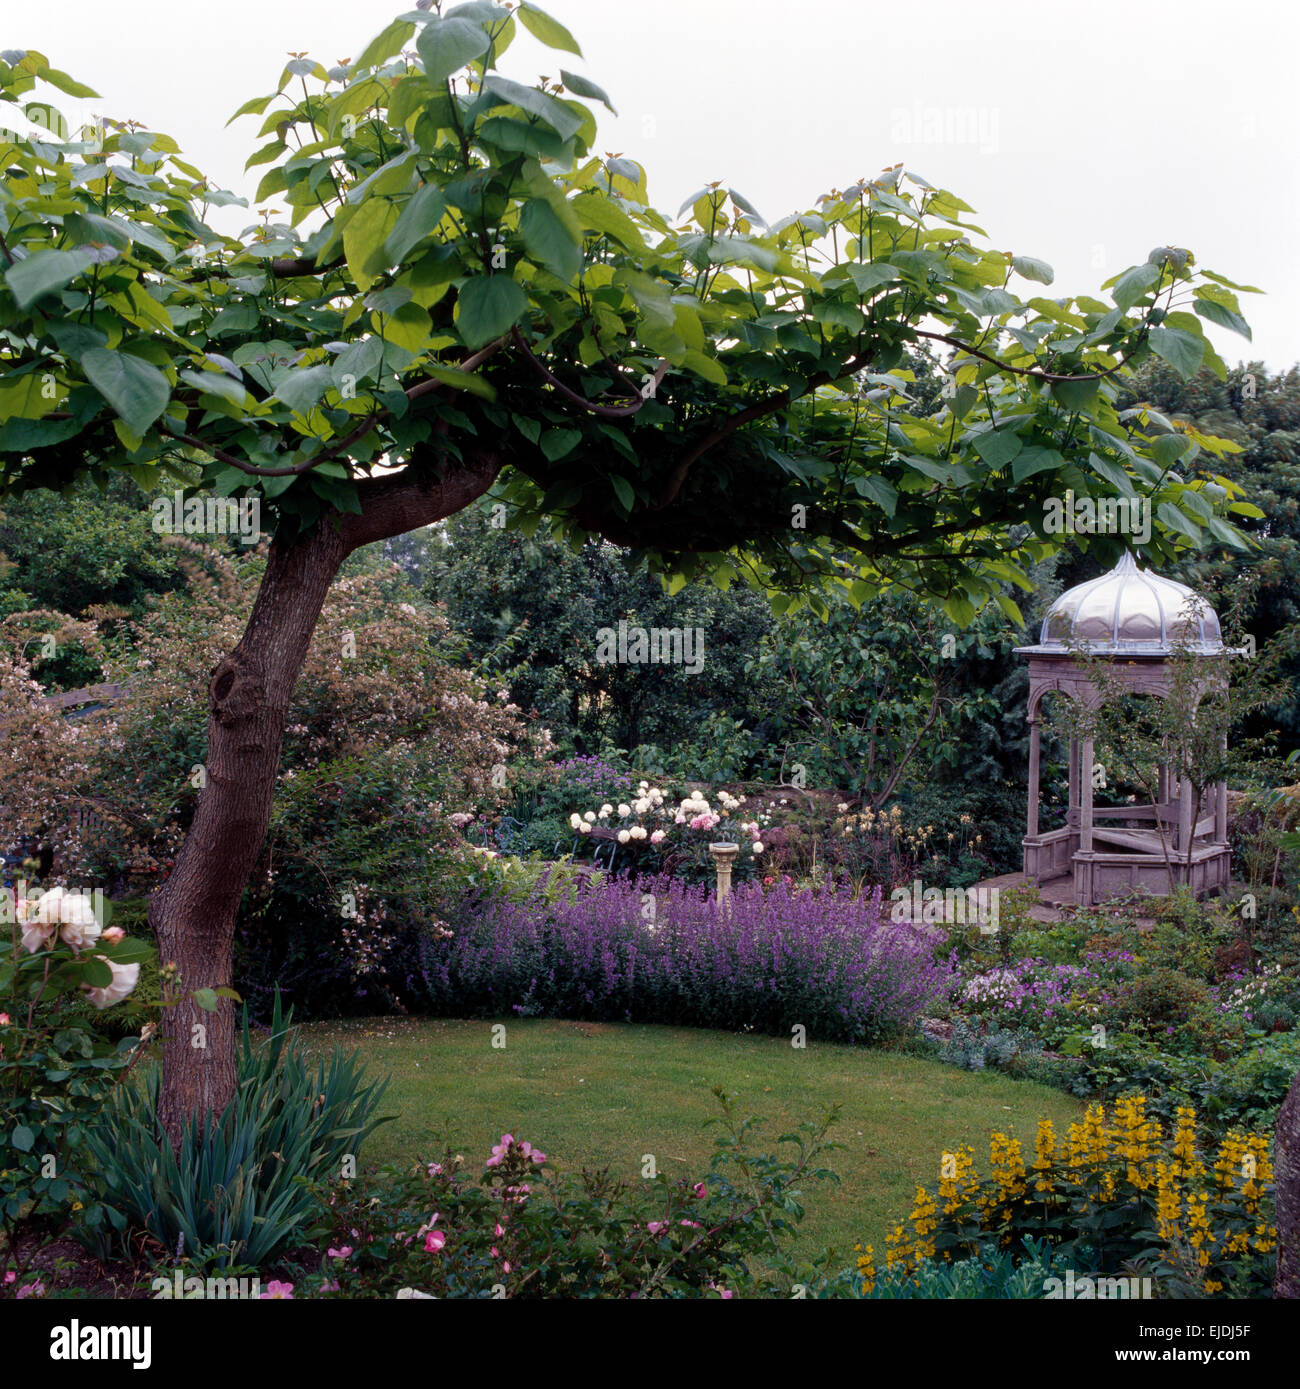 Lysimachia giallo e blu nepeta nella frontiera con il piccolo albero accanto a prato in paese giardino con gazebo Foto Stock